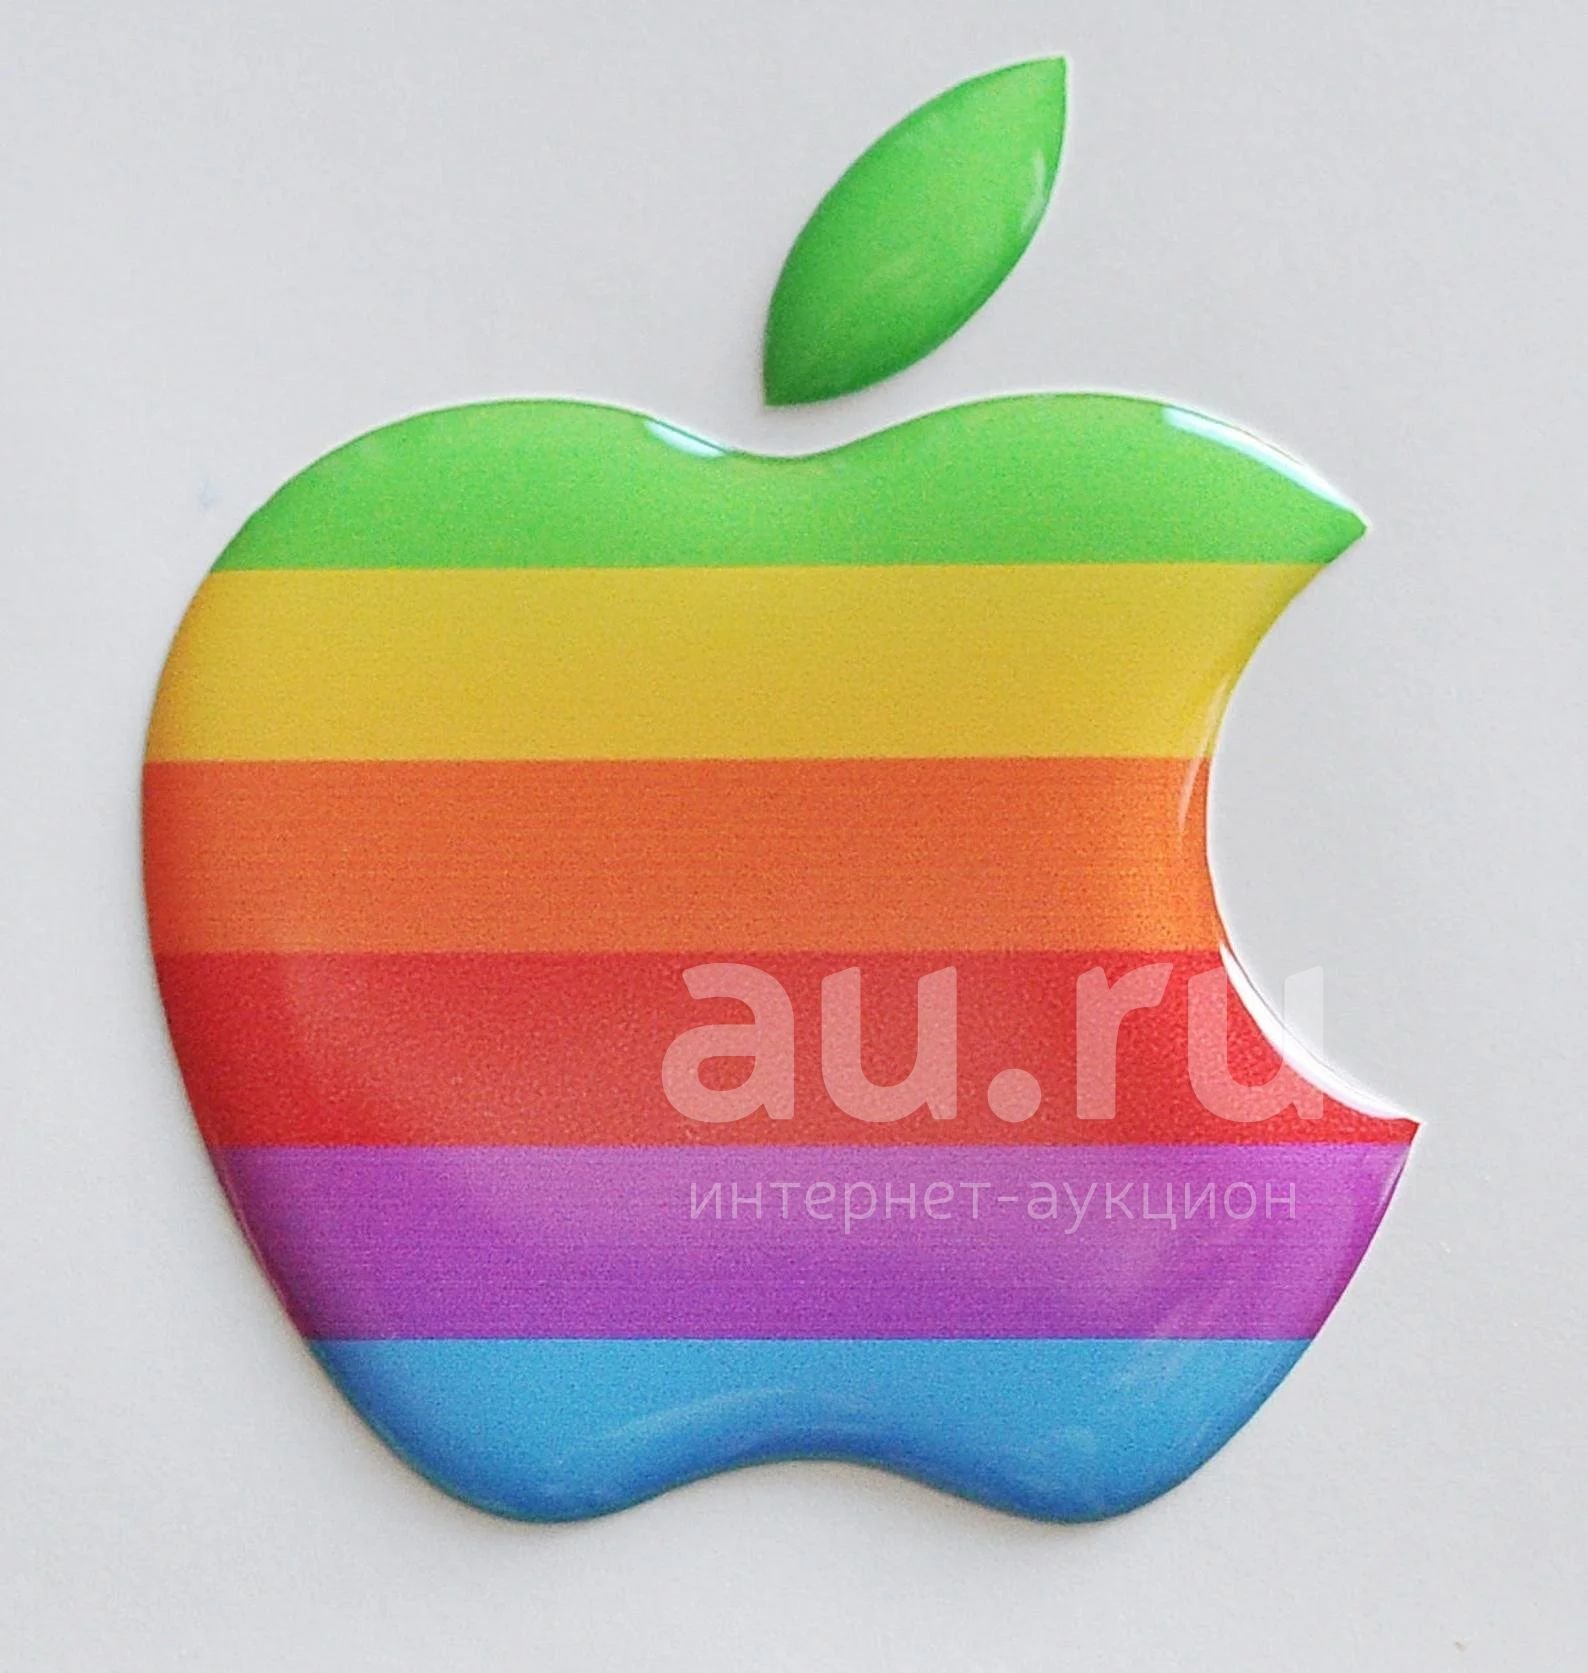 Купить стикеры на айфон. Стикеры эпл. Наклейка Apple. Наклейки яблоко Apple. Наклейка логотип Apple.